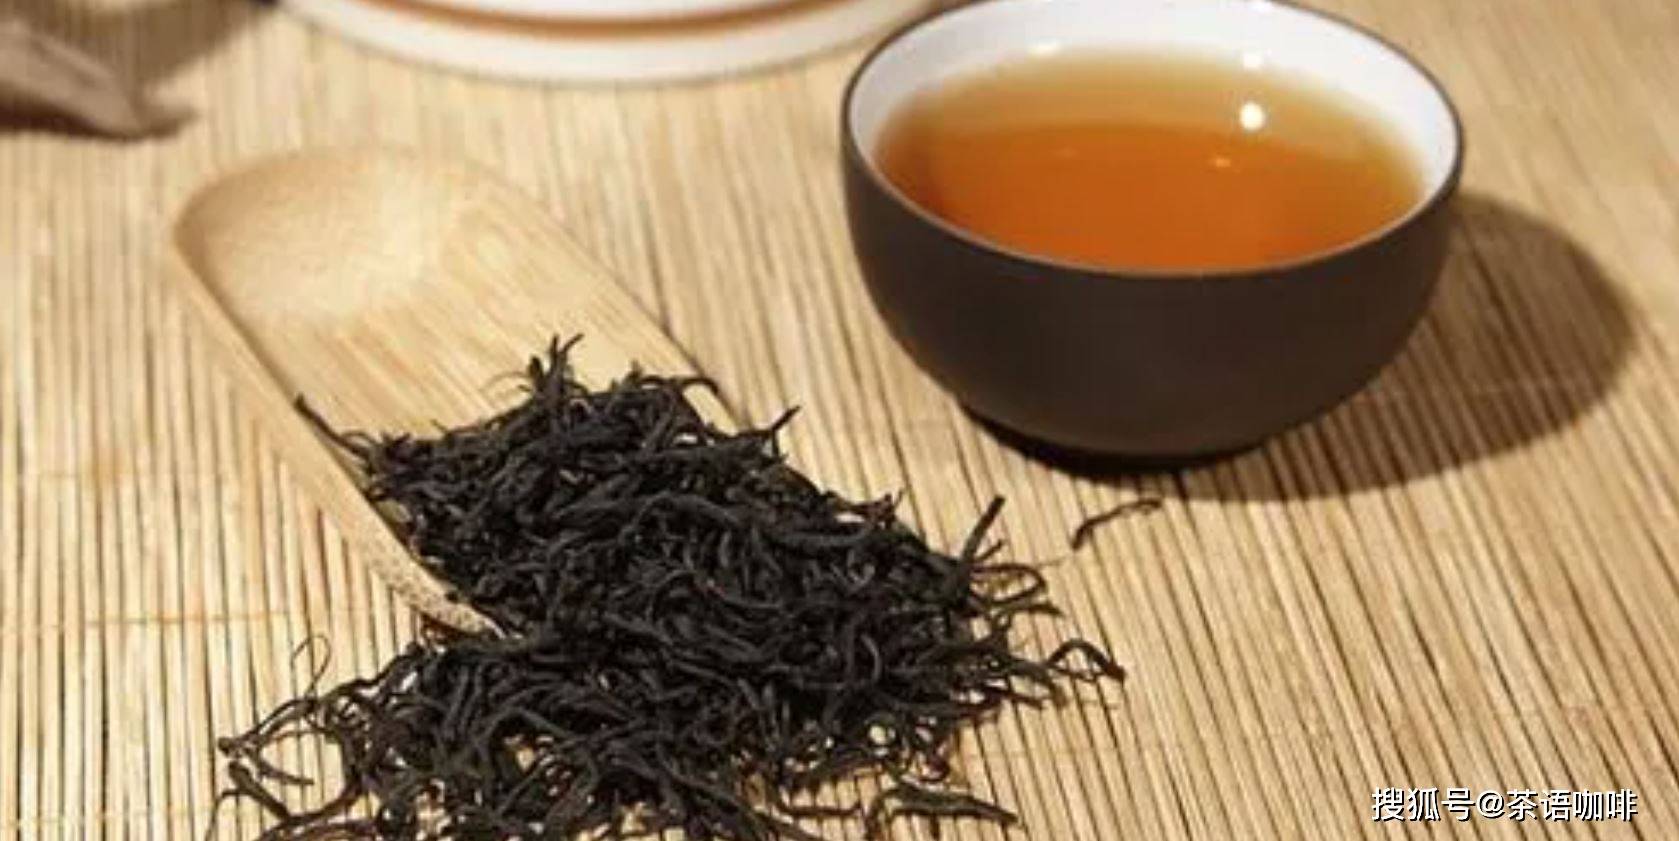 black tea为何是红茶?经典红茶种类有哪些?茶文化冷知识分享